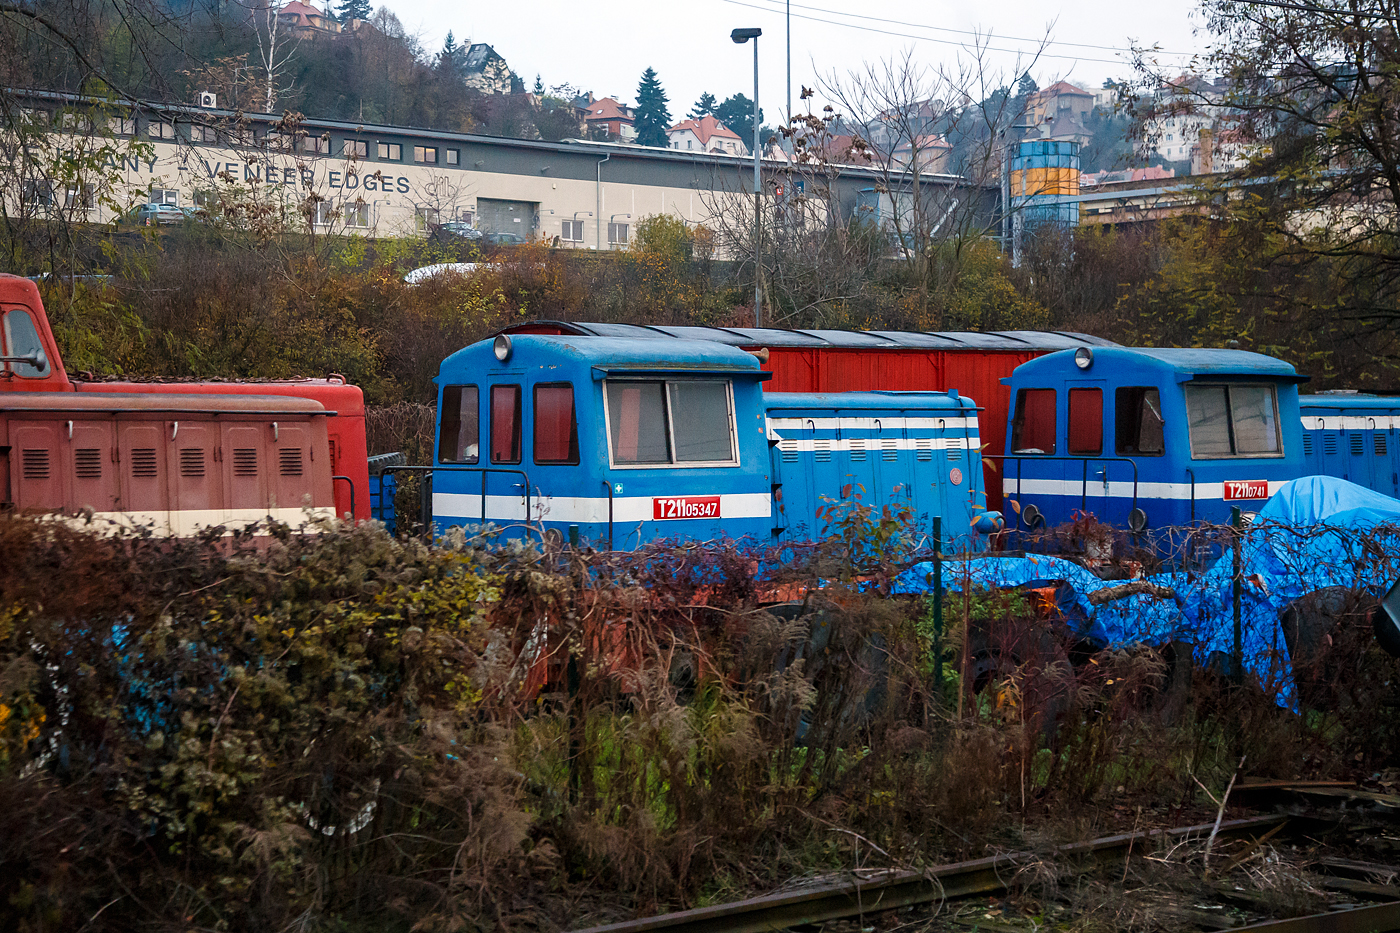 Aus dem Zug heraus und leider etwas verdeckt.....
Die ex ČSD T 211.05347 und einige weitere ex ČSD T 211.0 (spätere ČD BR 700) mit dem Spitznamen Prasátko (Schwein), stehen am 24.11.2022 bei Praha-Smichov. 

Die ČSD-Baureihe T 211.0 (ab 1988: Baureihe 700) waren zweiachsige dieselmechanische Rangierlokomotiven der Tschechoslowakischen Staatsbahn ČSD. Neben dem Bau von Dampflokomotiven wurde ab 1953 bei ČKD diese Lokomotive konstruiert, und im Jahr 1956 wurde ein Prototyp an die ČSD geliefert. Das Aussehen dieser einfachen Konstruktion, die leichte Bedienung und die Instandhaltung überzeugten, und so wurden von 1957 bis 1961 in verschiedenen Werken insgesamt 835 Exemplare produziert.

Diese kleine Lokomotive wurde für den leichten Dienst (leichter Rangierdienst, Verschub in Depots) sowie als leichte Werklokomotive verwendet. Als Leistungsquelle wurde der LKW-Dieselmotor Tatra 111 A gewählt, die Leistungsübertragung besorgte das bei den Loks M 131.1 bewährte Mylius-Getriebe.

Außer für die ČSD wurde diese Lokomotive für verschiedene Betriebe und in den Export (DDR, China, Bulgarien, Ägypten, UdSSR, Polen, Rumänien, Albanien, Irak, Indien und Ungarn) in den verschiedensten Ausführungen geliefert.

Innerhalb dieser Baureihe gab es einige Abweichungen sowohl im Aussehen als auch in einigen technischen Details. So befinden sich bei einem Teil der Lokomotiven die Türen an der Seite des Führerhauses, bei der Mehrzahl ist der Einstieg von hinten. Alle Aufbauten der Lokomotive wurden konstruktiv so gestaltet, dass sie für verschiedene Spurweiten von 600 mm bis 1.676 mm verwendet werden konnten.

Ein Großteil der Lokomotiven erhielt später neue Motoren mit 147 kW Leistung. Diese Rekonstruktion führte zur Einreihung in die Baureihe T 211.1. Die Lokomotiven mit Originalmotor wurden 1988 in die Baureihe 700, die rekonstruierten Maschinen in die Reihe 701 umgenummert.

TECHNISCHE DATEN:
Gebaute Anzahl: 835
Hersteller: 	ČKD u. a.
Baujahre: 1953 bis 1961
Achsformel: B
Spurweite: 	1.435 mm (Normalspur)
Länge über Puffer:  7.240 mm
Dienstgewicht: 22,0 t
Höchstgeschwindigkeit: 40 km/h
Installierte Leistung:  121 kW
Anfahrzugkraft: 57 kN
Leistungskennziffer: 6,68 kW/t
Motorentyp: 14,8 Liter luftgekühltem 12-Zylinder Dieselmotor vom Typ Tatra 111 A
Leistungsübertragung: mechanisch
